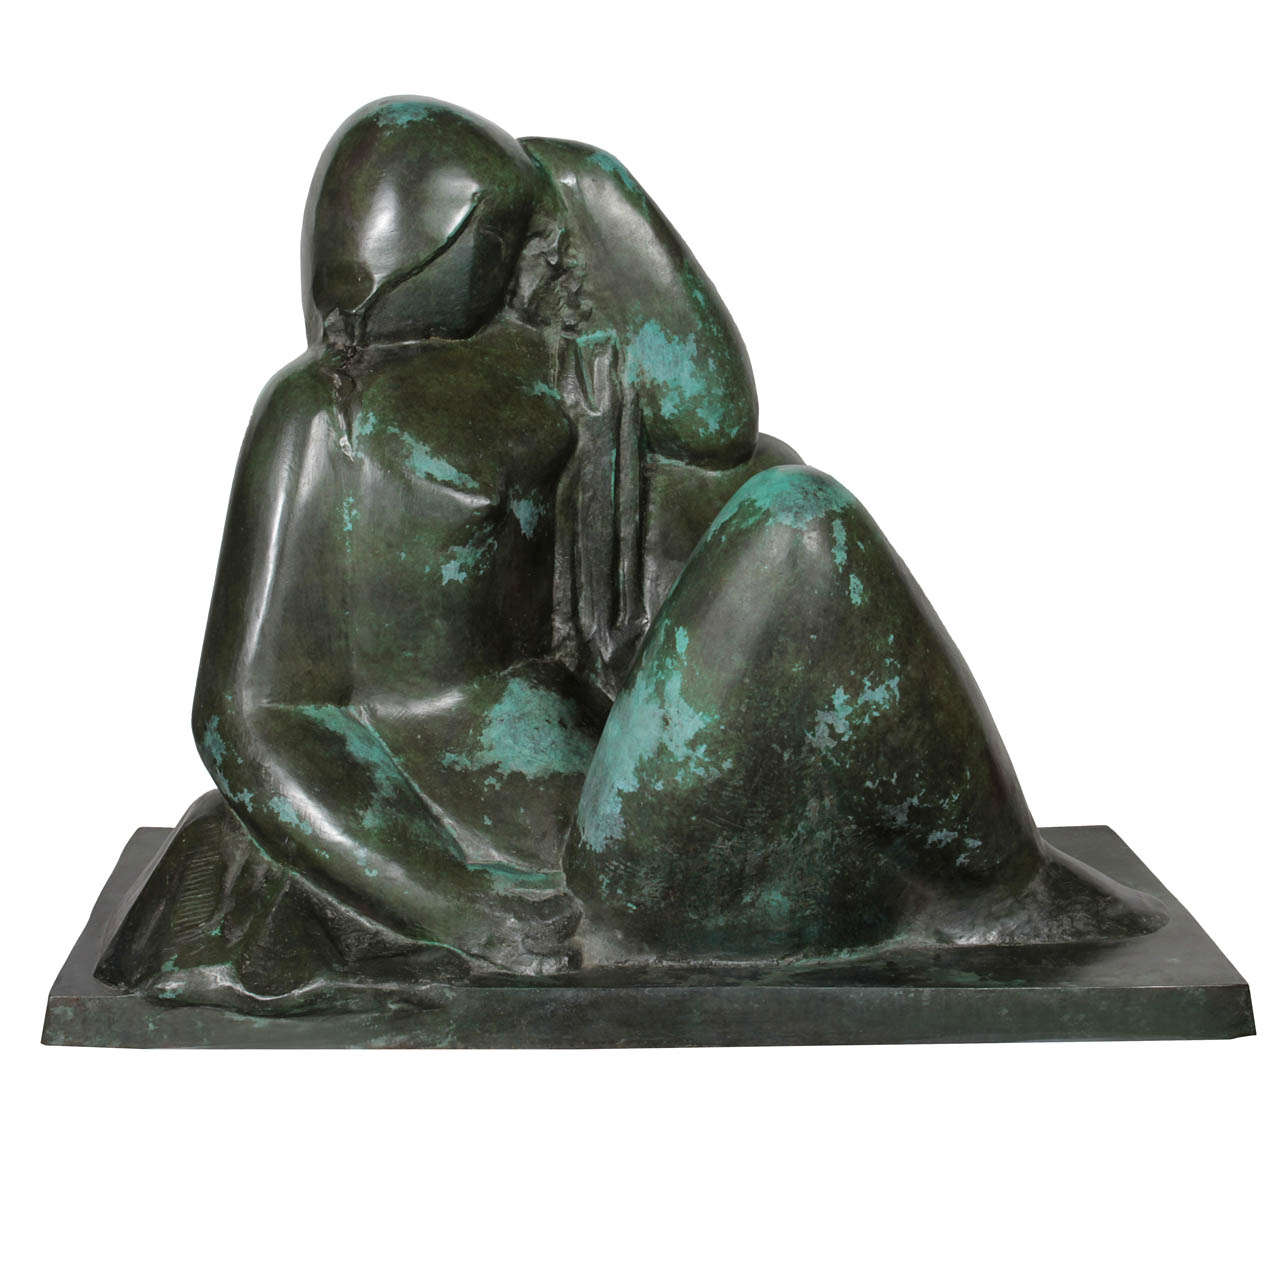 Monumental Original Bronze Sculpture "Le Reve" by Joseph Csaky